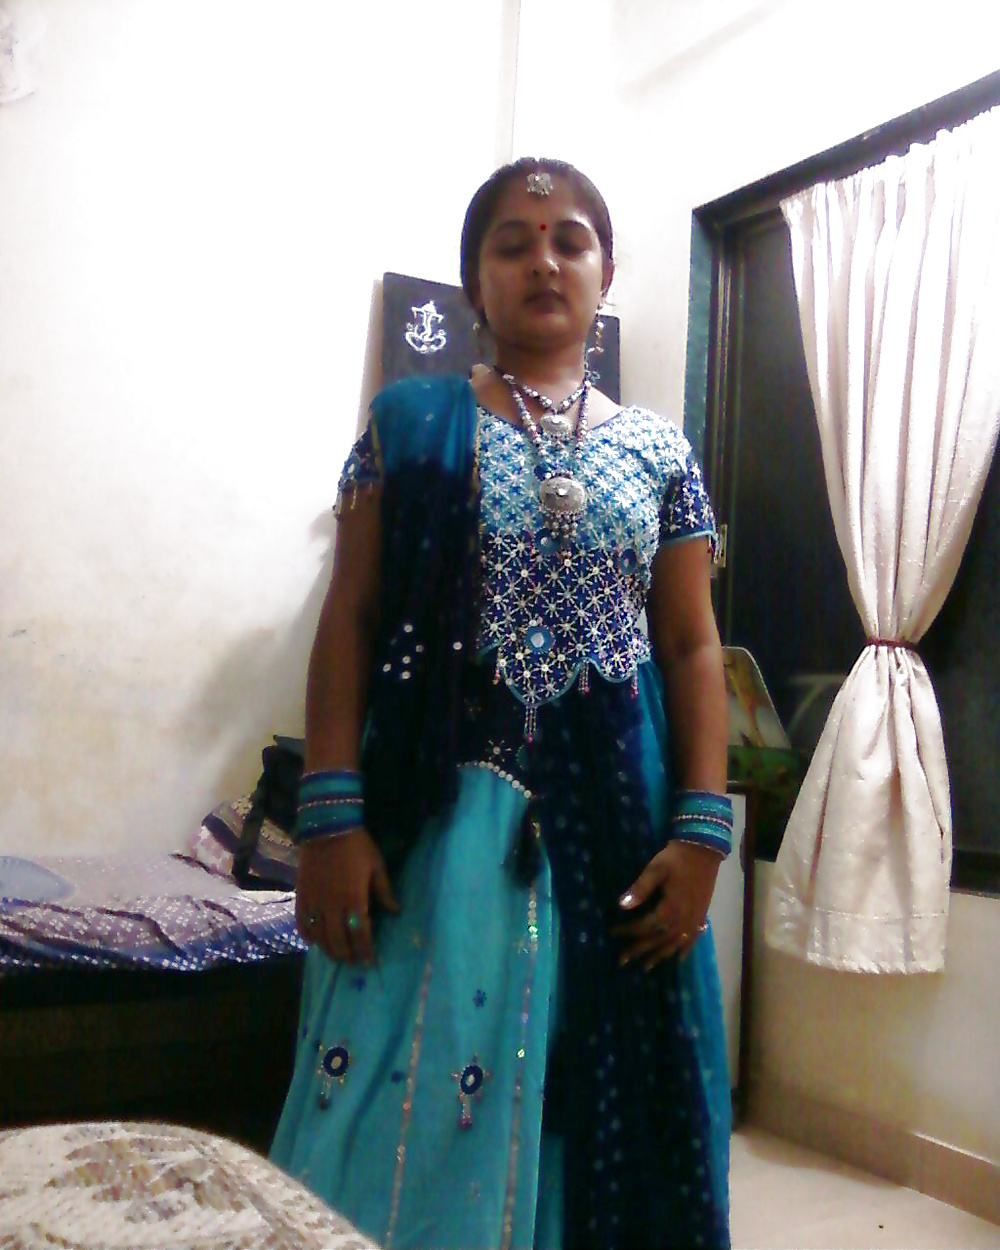 INDIAN WIFE MANGLA -INDIAN DESI PORN SET 9.6